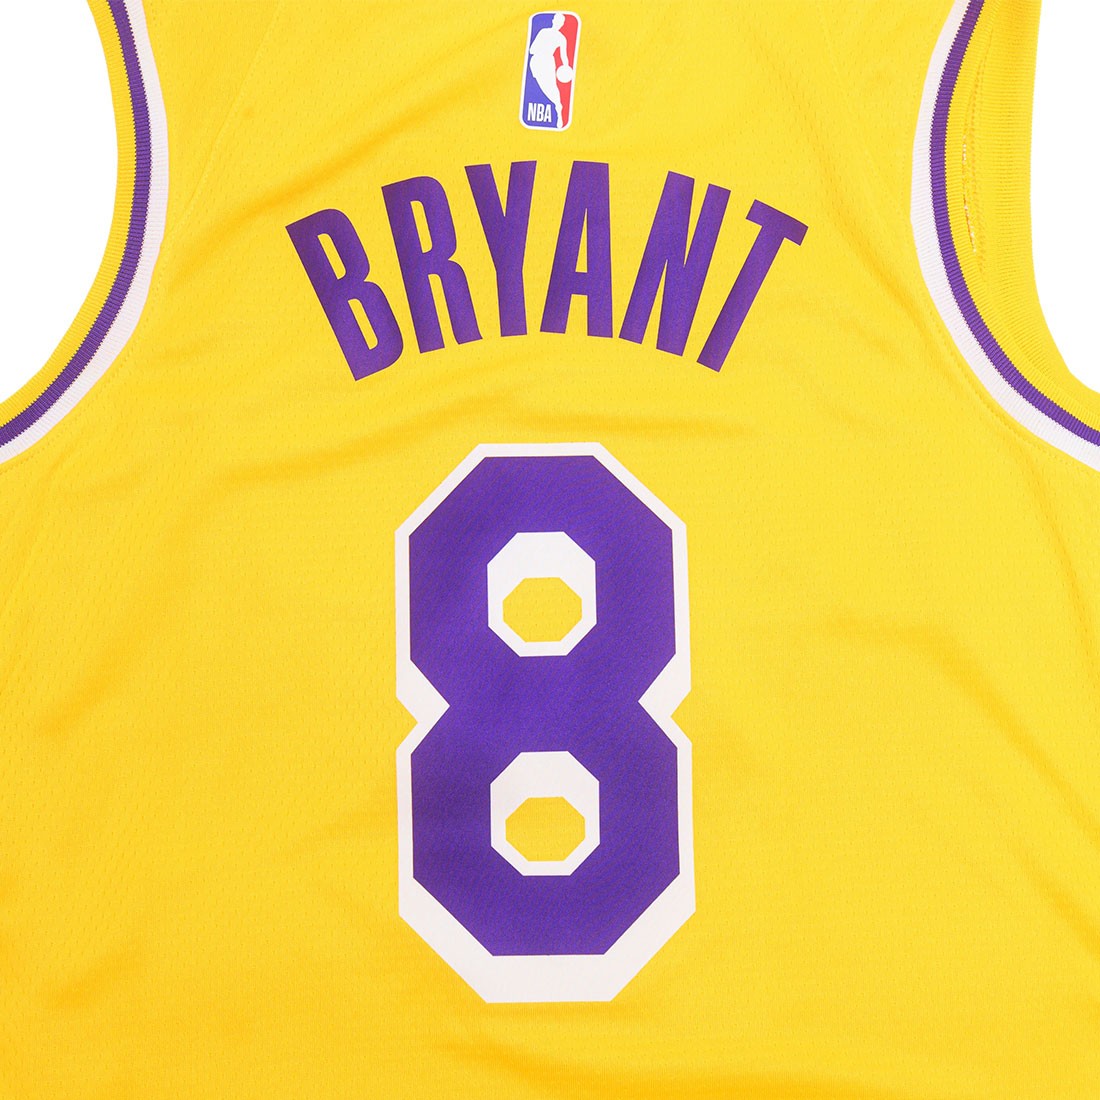 Nike Kobe Bryant Authentic jersey pro cut nba lakers purple size XL 48 nwt